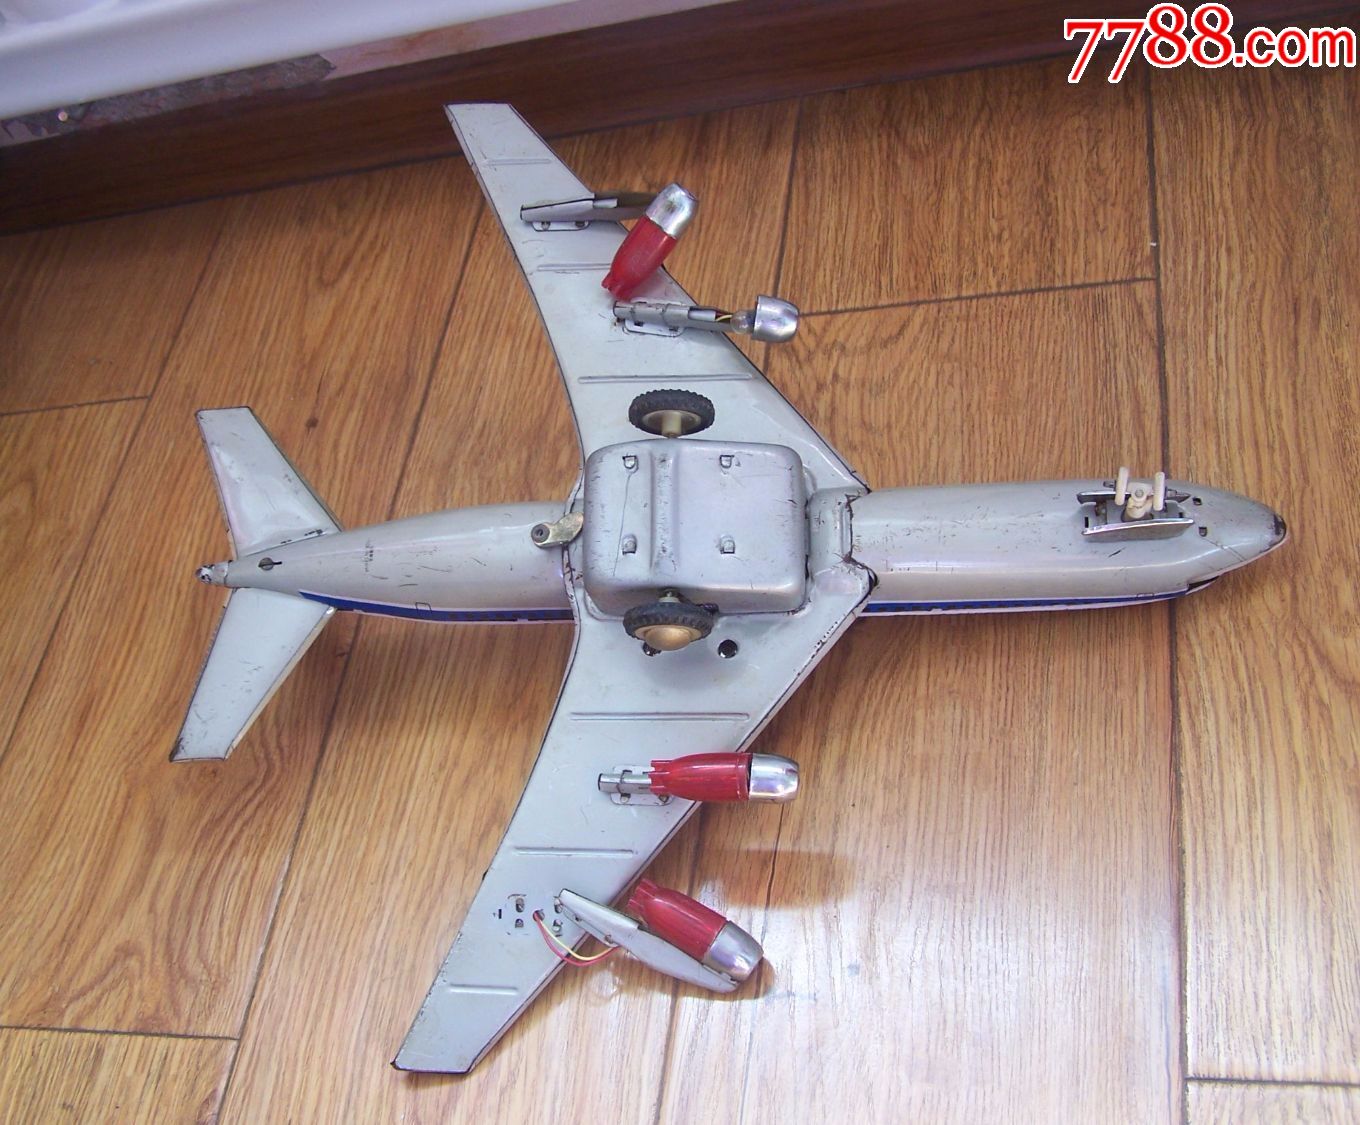 八十年代,大尺寸,铁皮玩具-me087,民航飞机,点图可放大